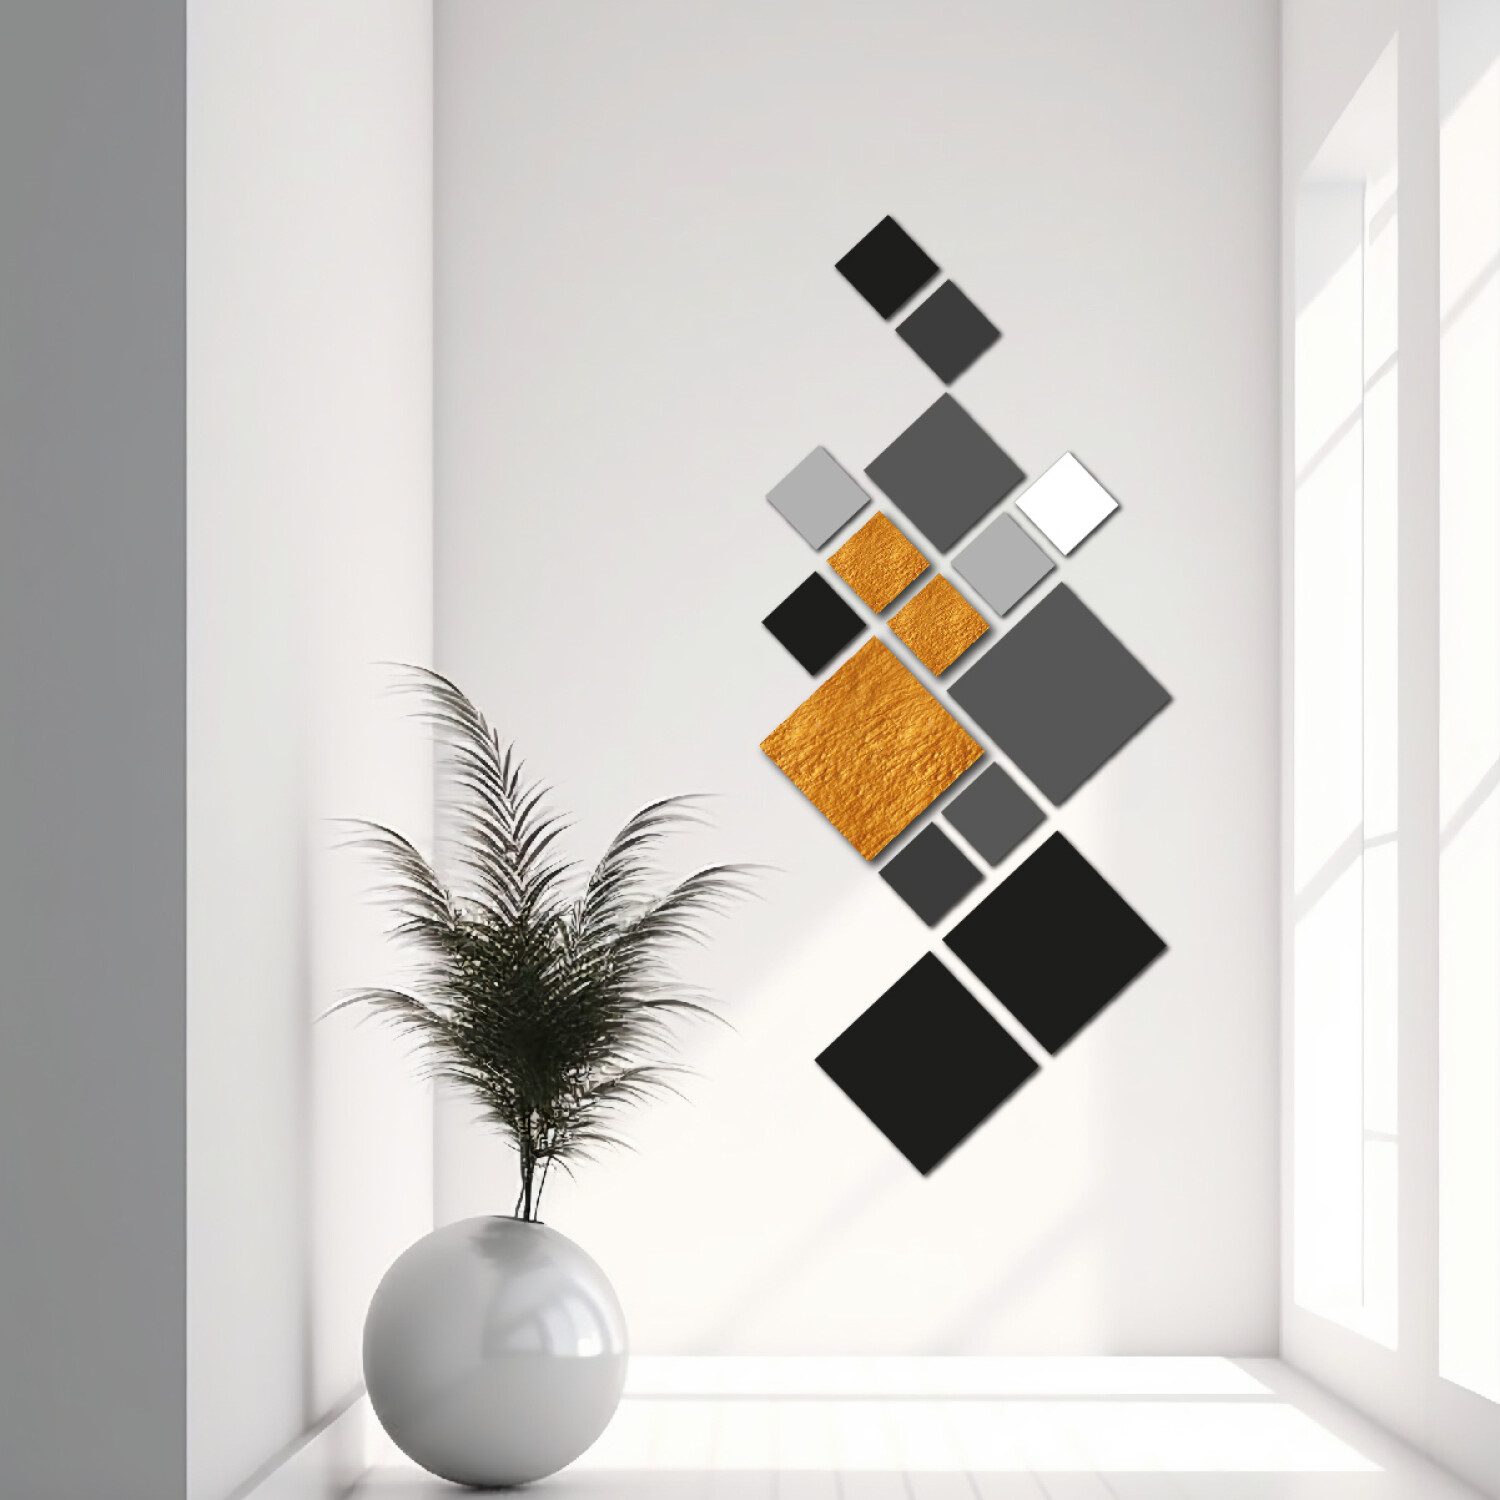 Cuadro Decorativo Moderno de Madera MDF Abstracto Incluye 15 Cuadrados de  Diferente Tamaño y Color